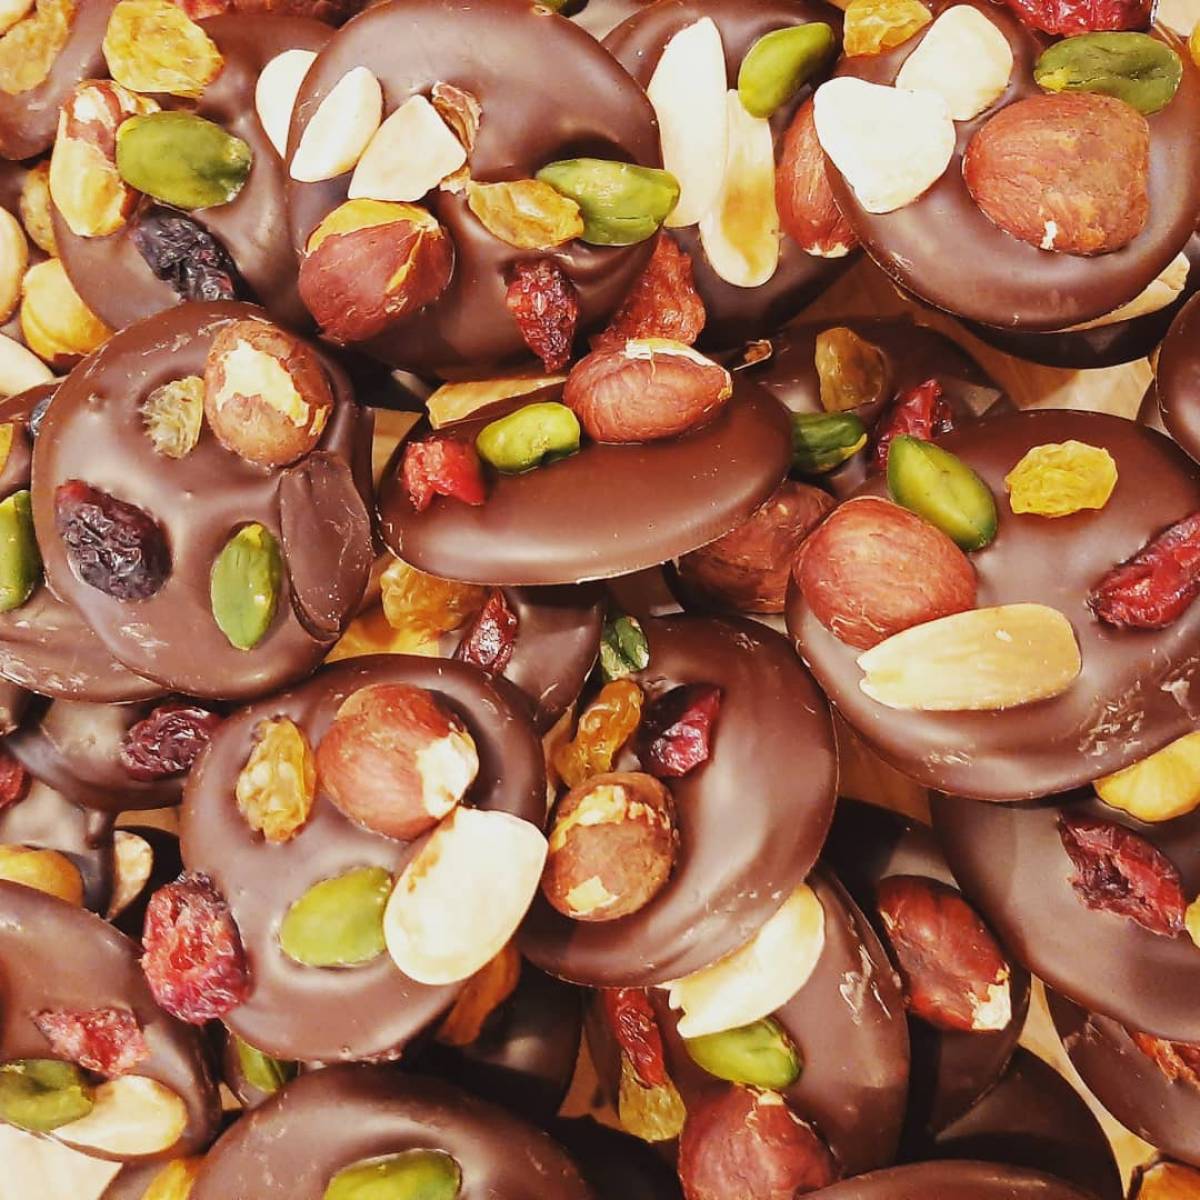 Les mendiants, palets de chocolats noir 70% surmontés de fruits secs.